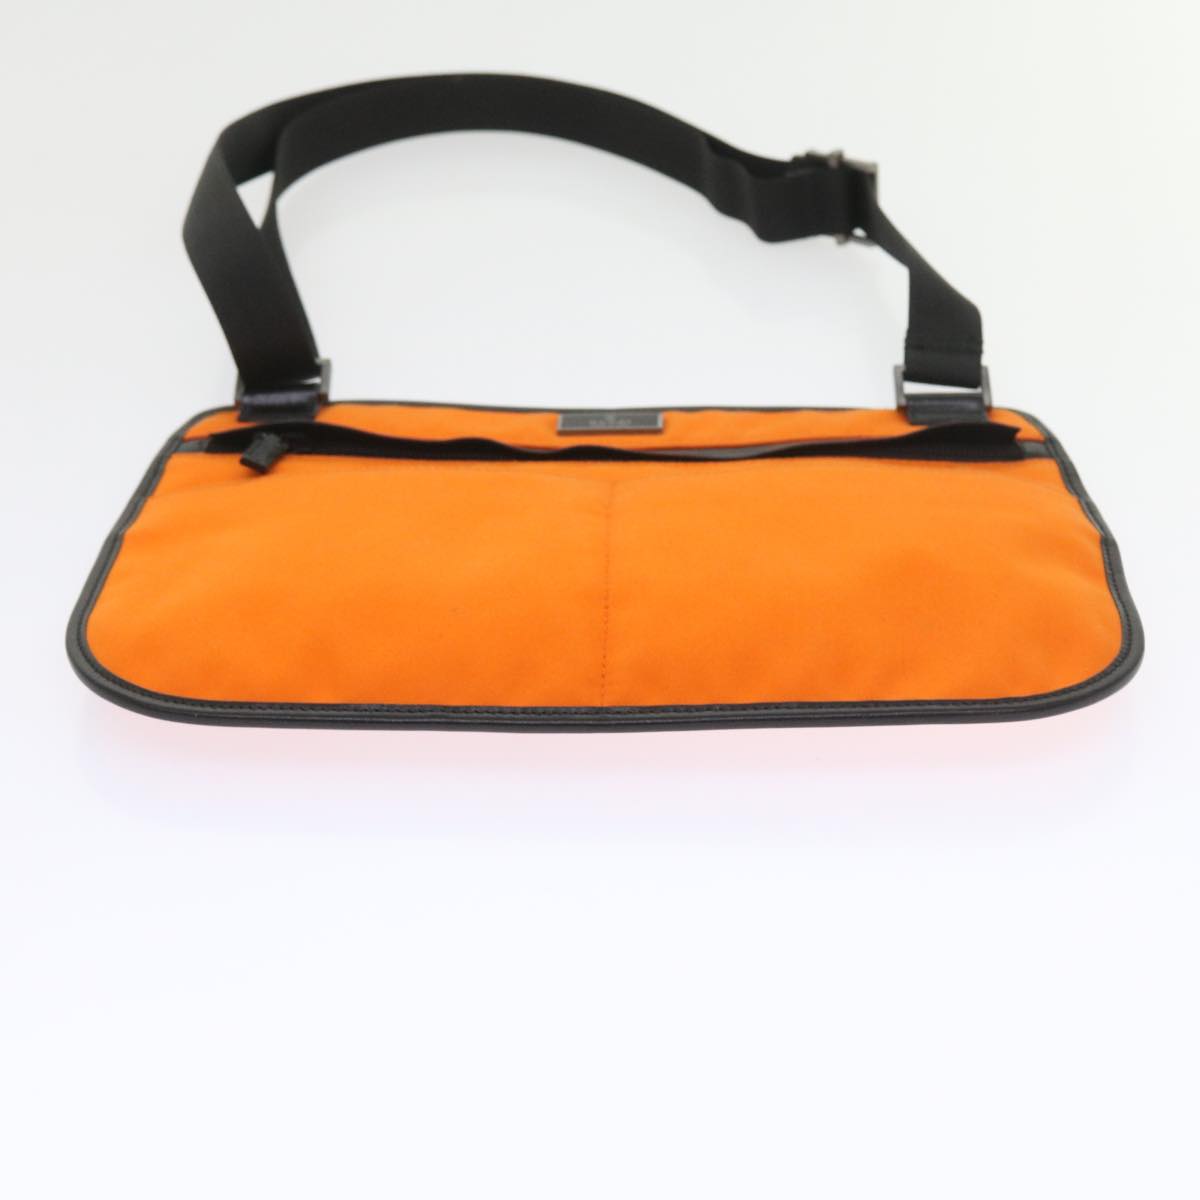 Gucci Unisex Orange Canvas Shoulder Bag in Orange